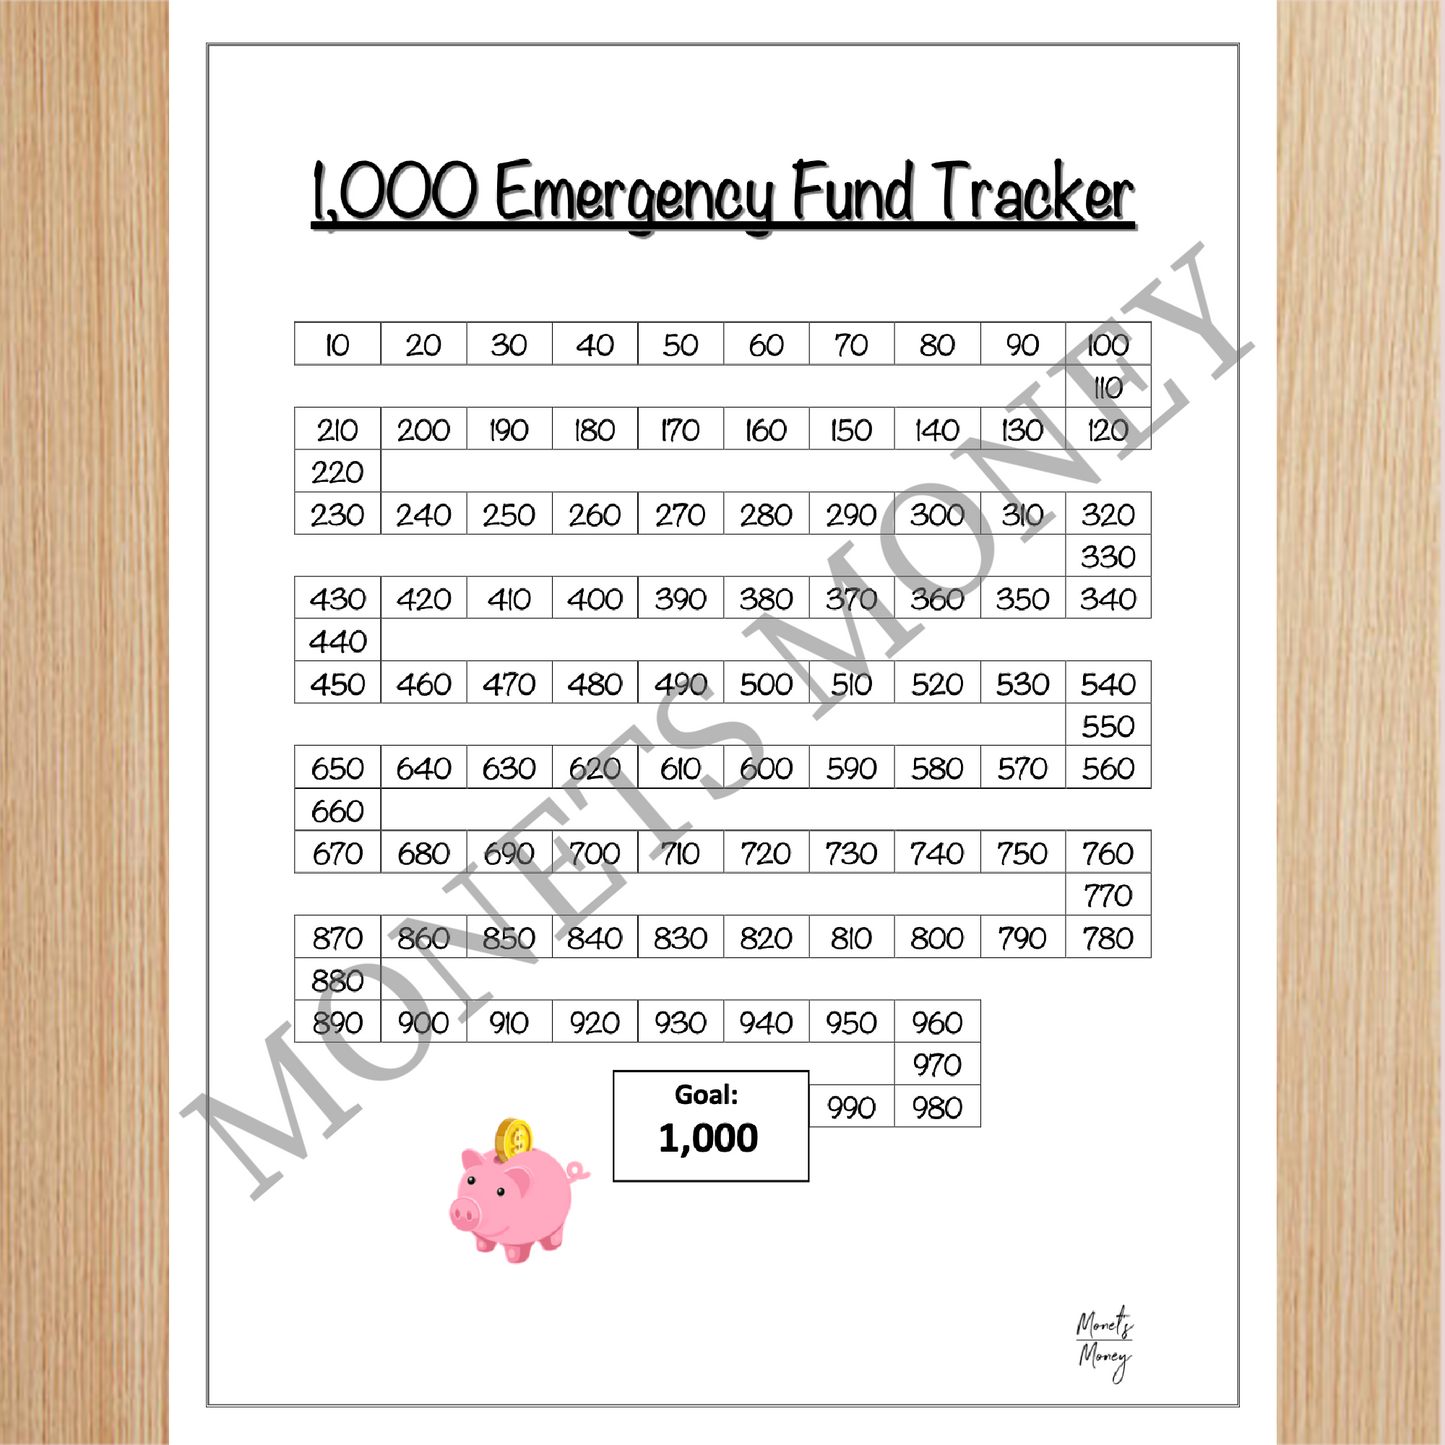 Emergency Fund Tracker | 1000 Dollar Emergency Tracker